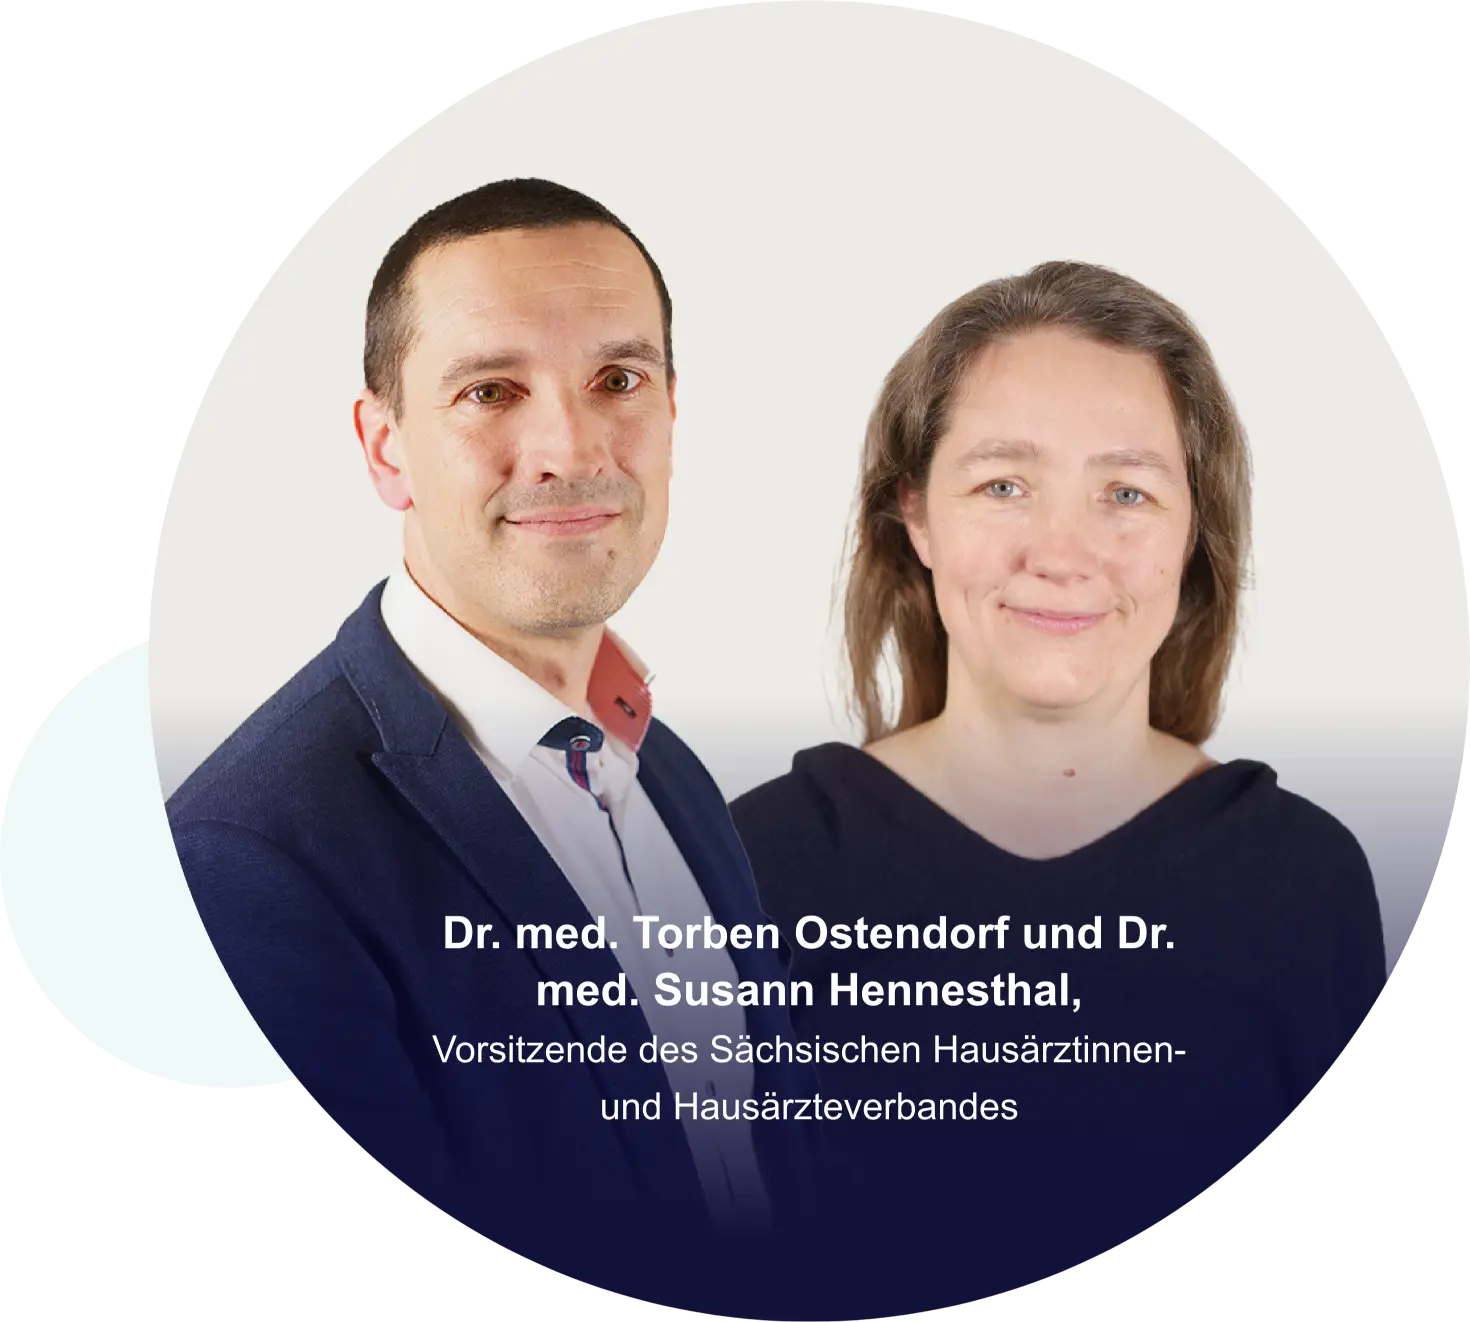 Dr. med. Torben Ostendorf und Dr. med. Susann Hennesthal